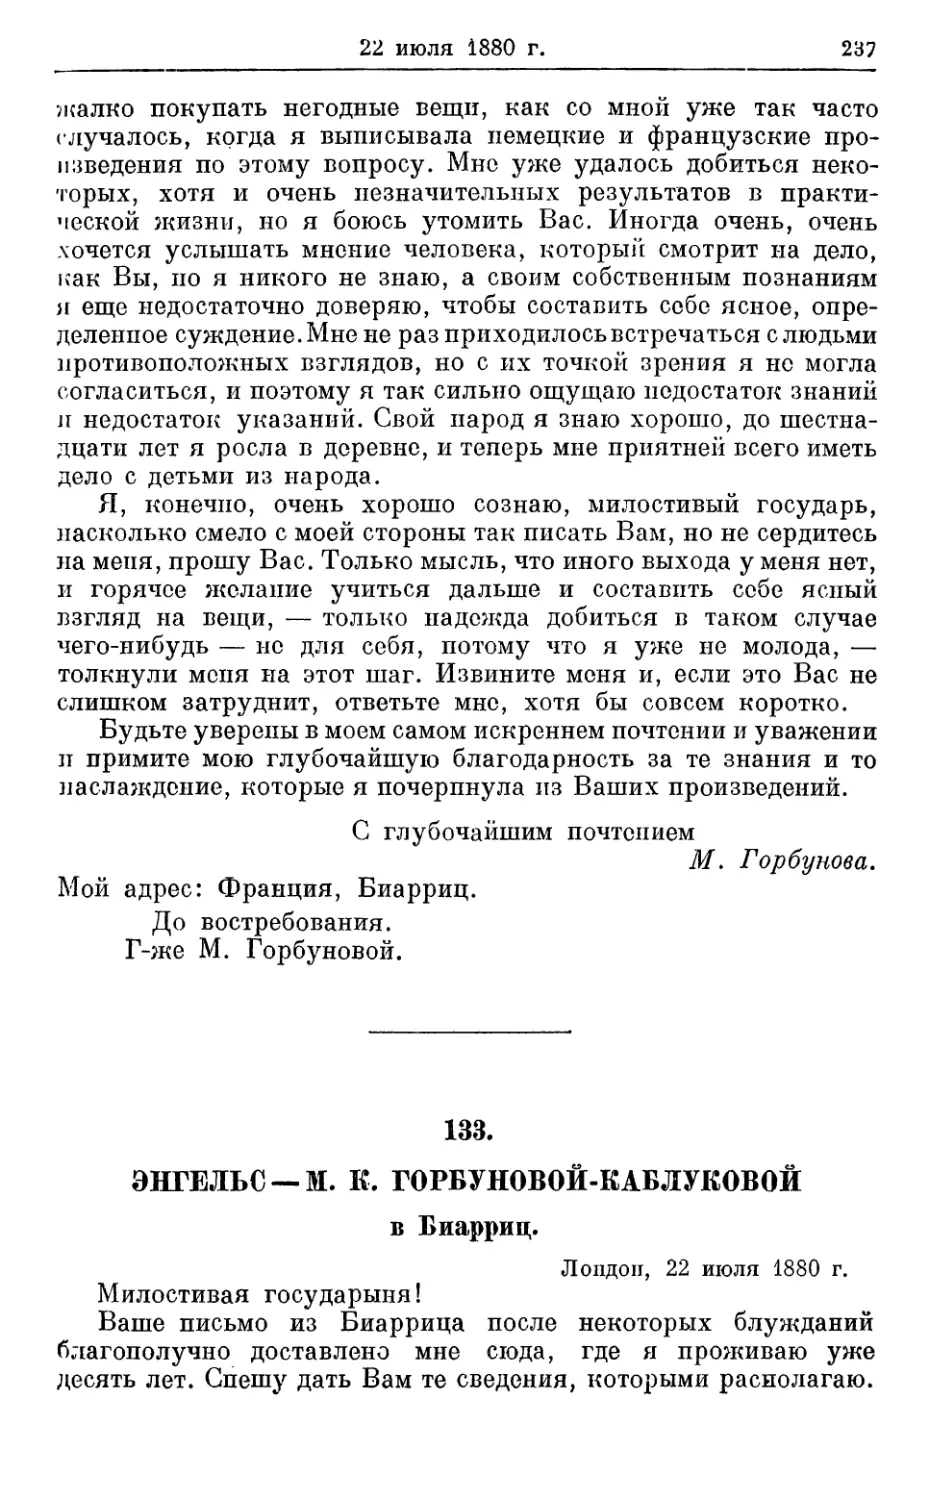 133. Энгельс — М. К. Горбуновой-Каблуковой, 22 июля 1880г